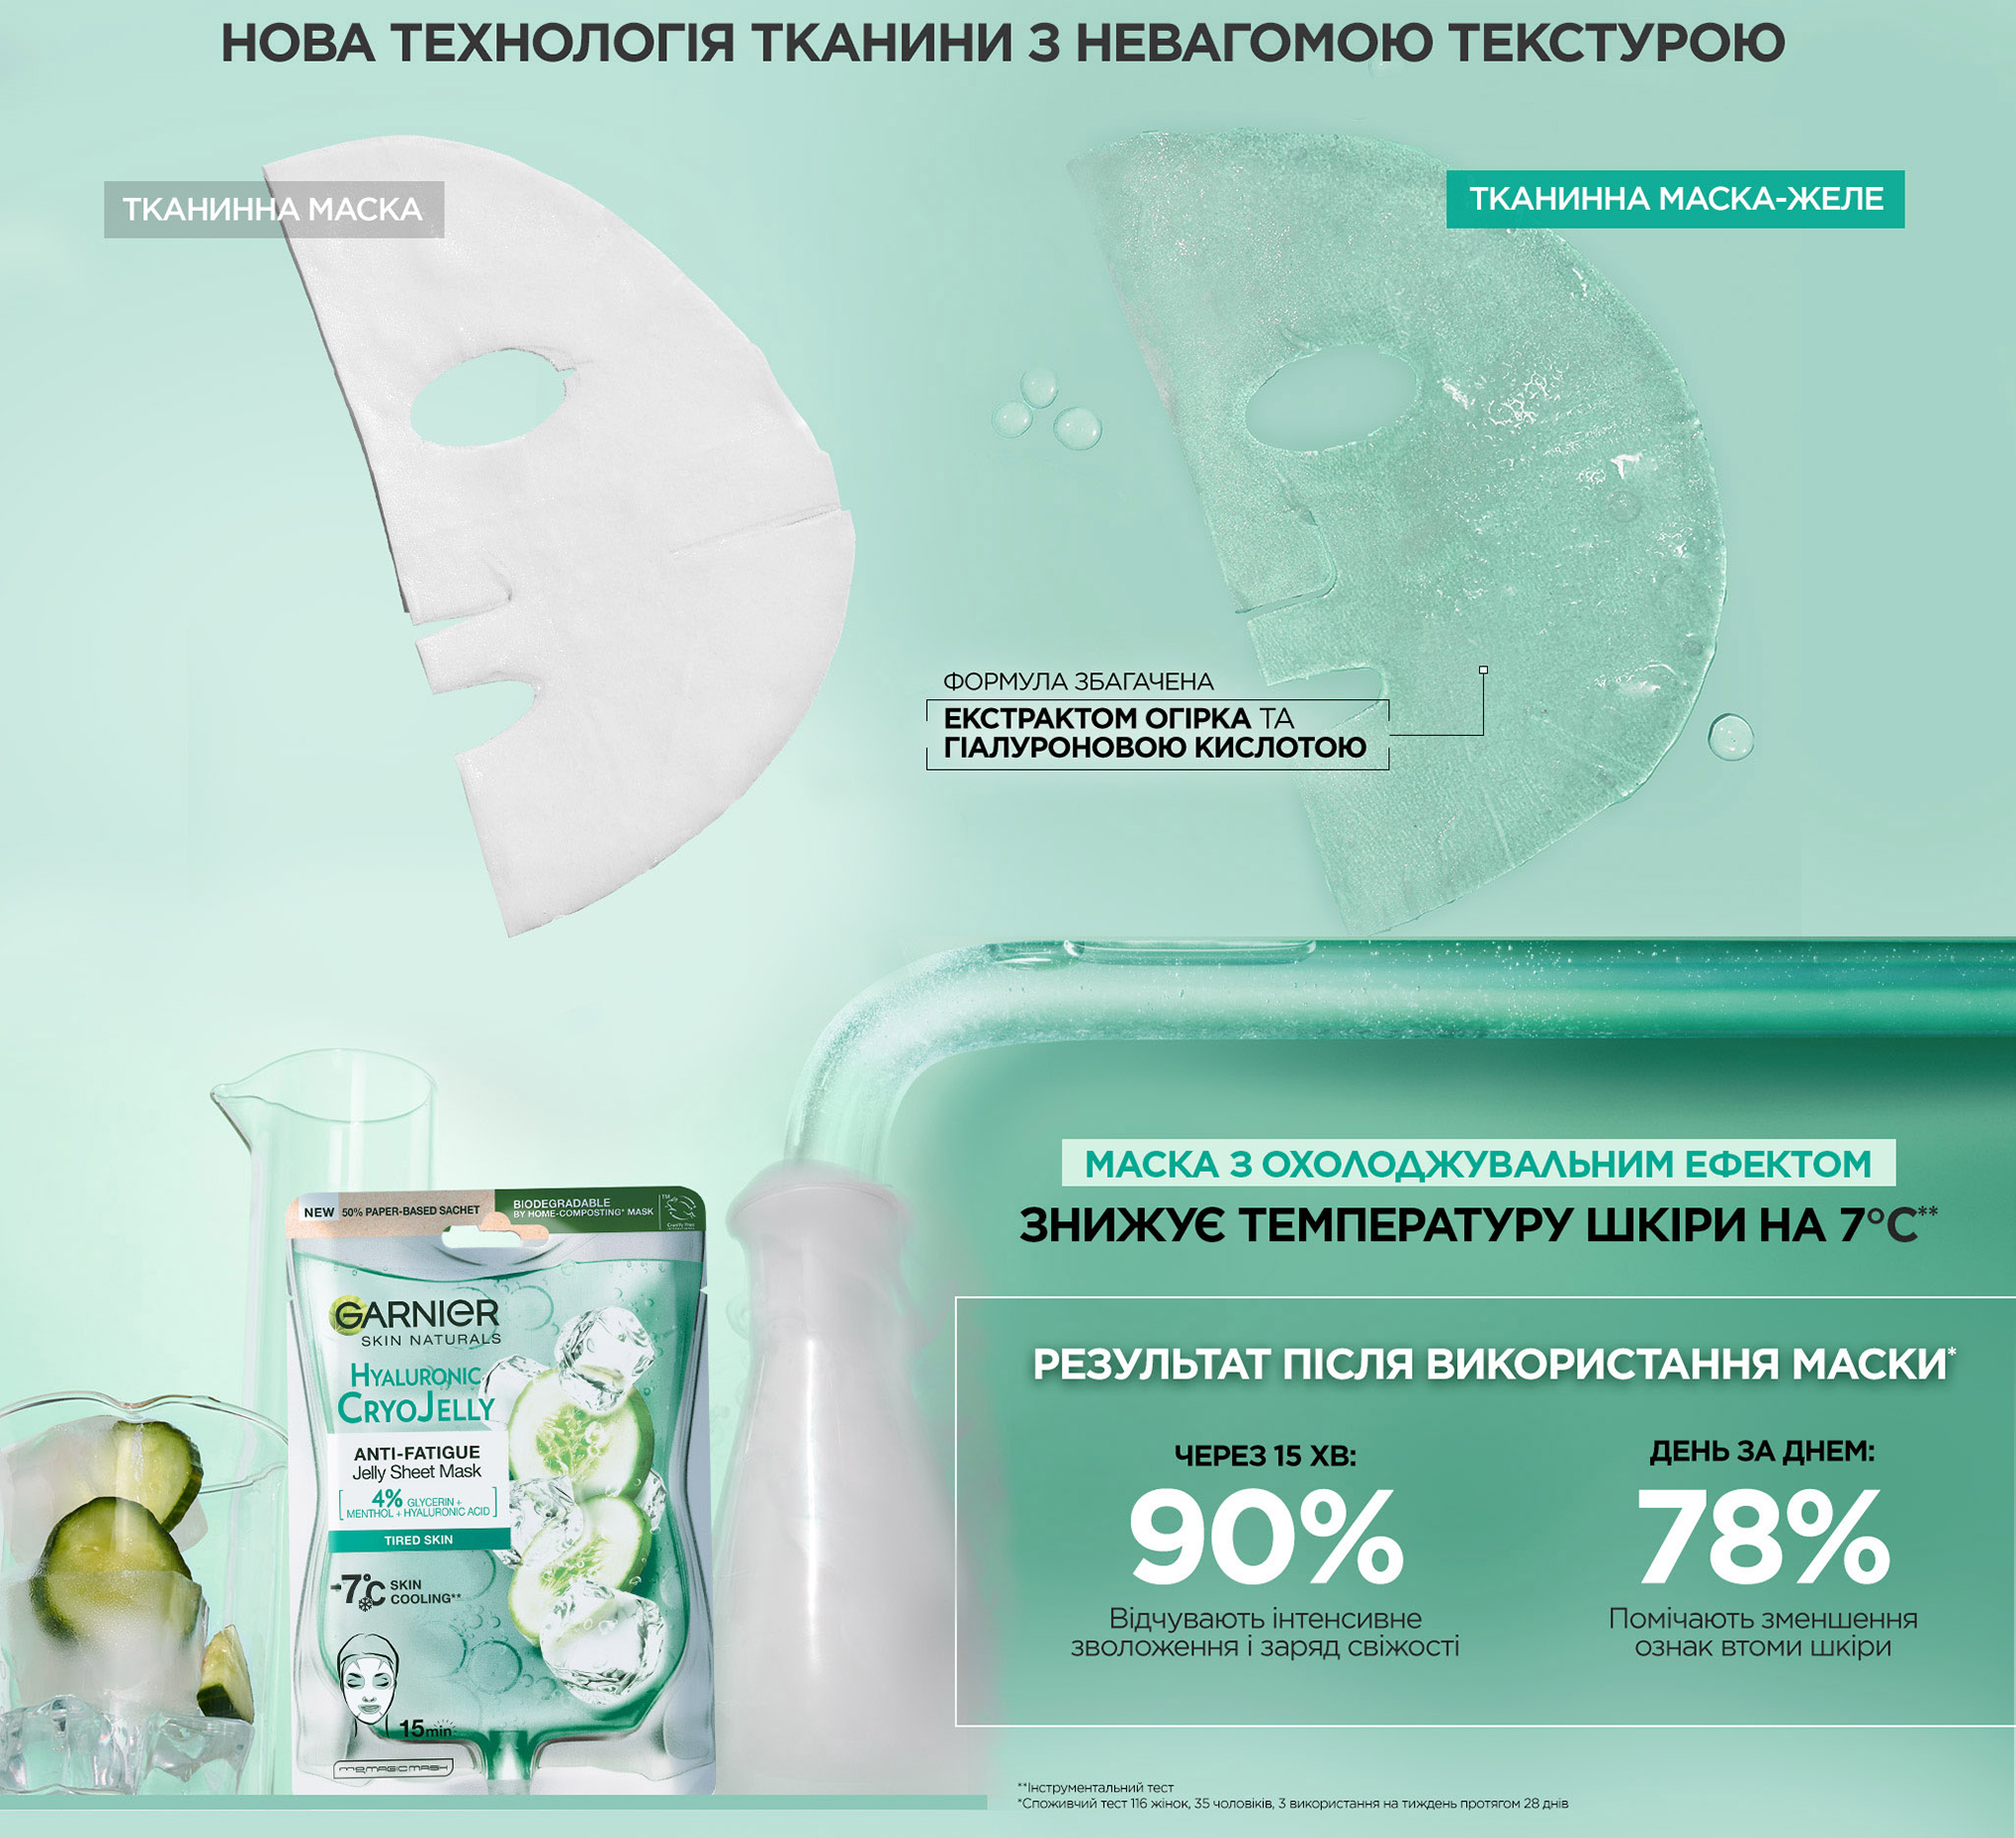 Garnier Skin Naturals Hyaluronic Cryo Jelly Sheet Mask